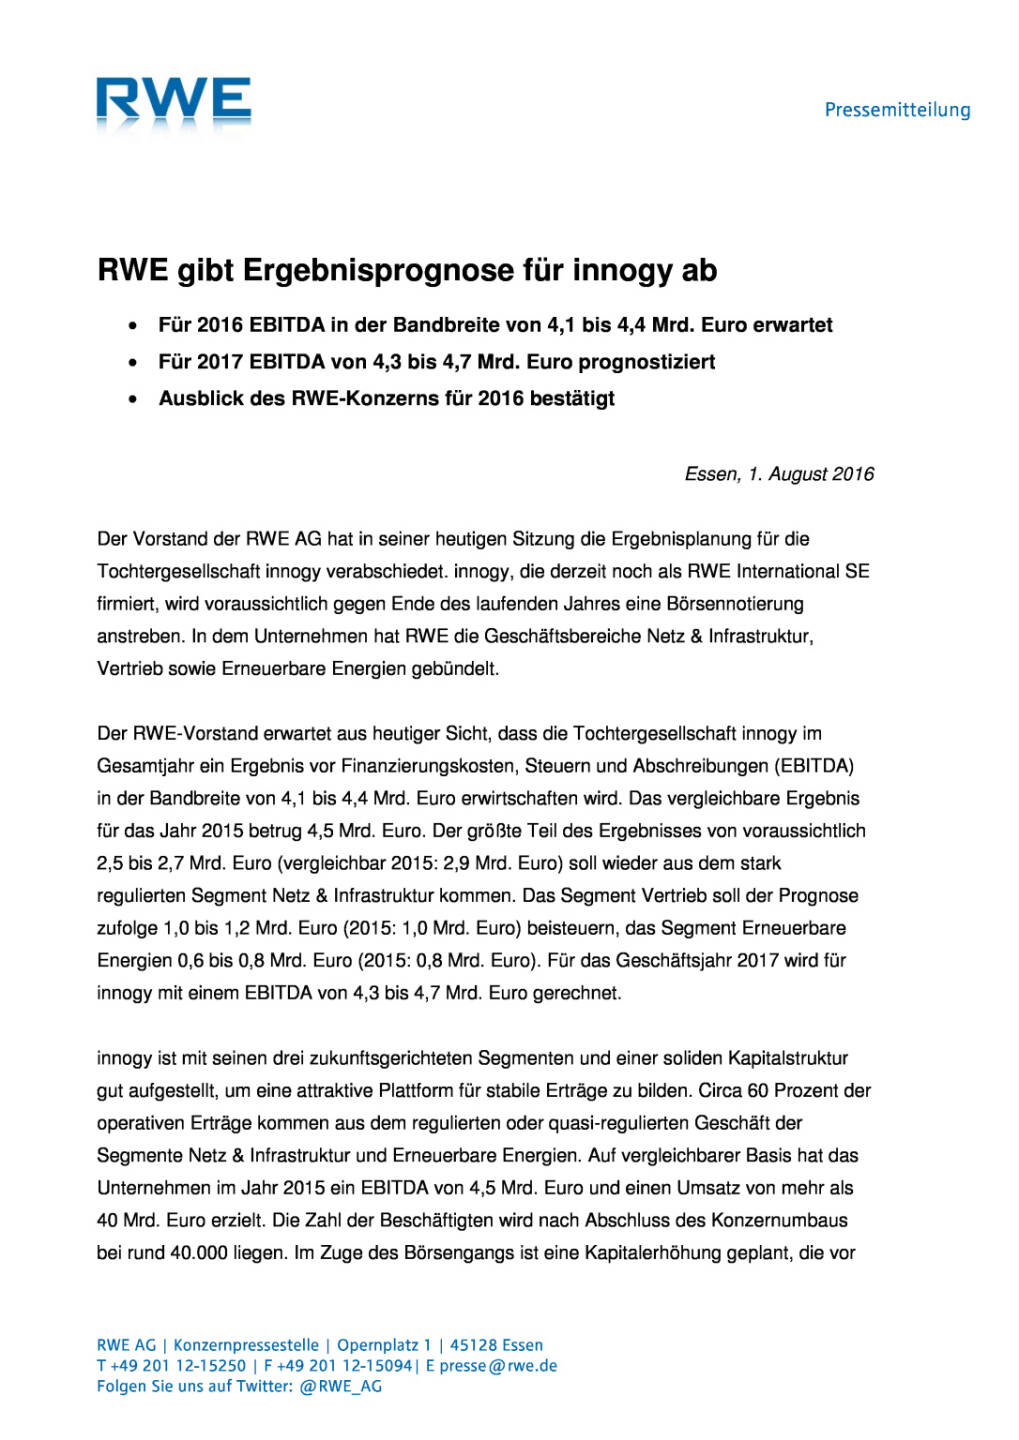 RWE: Ergebnisprognose für innogy, Seite 1/3, komplettes Dokument unter http://boerse-social.com/static/uploads/file_1534_rwe_ergebnisprognose_fur_innogy.pdf